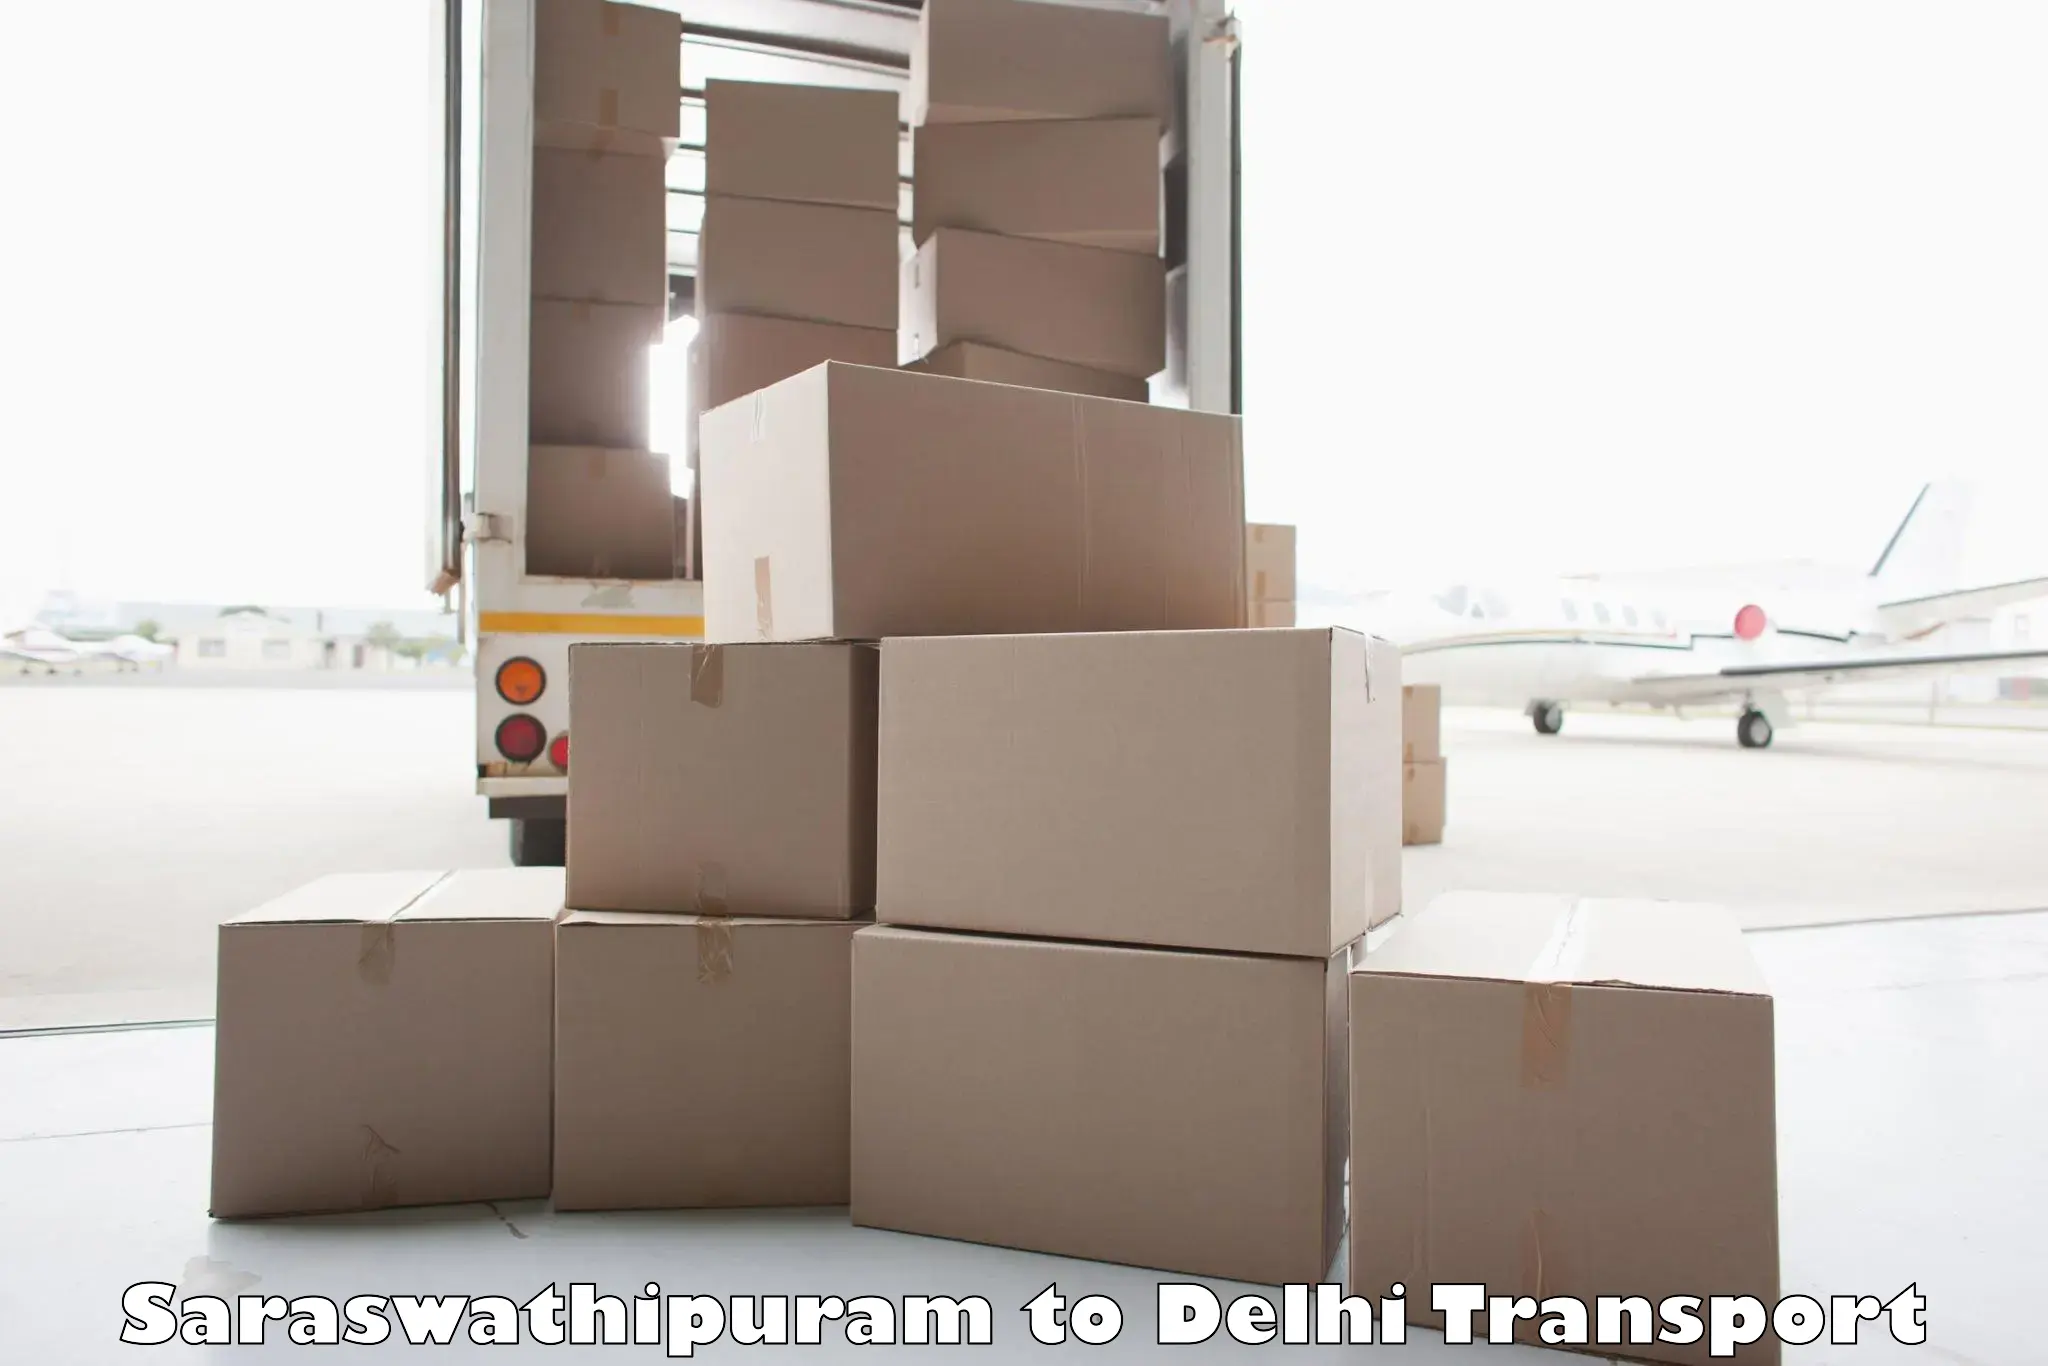 Transport services in Saraswathipuram to Delhi